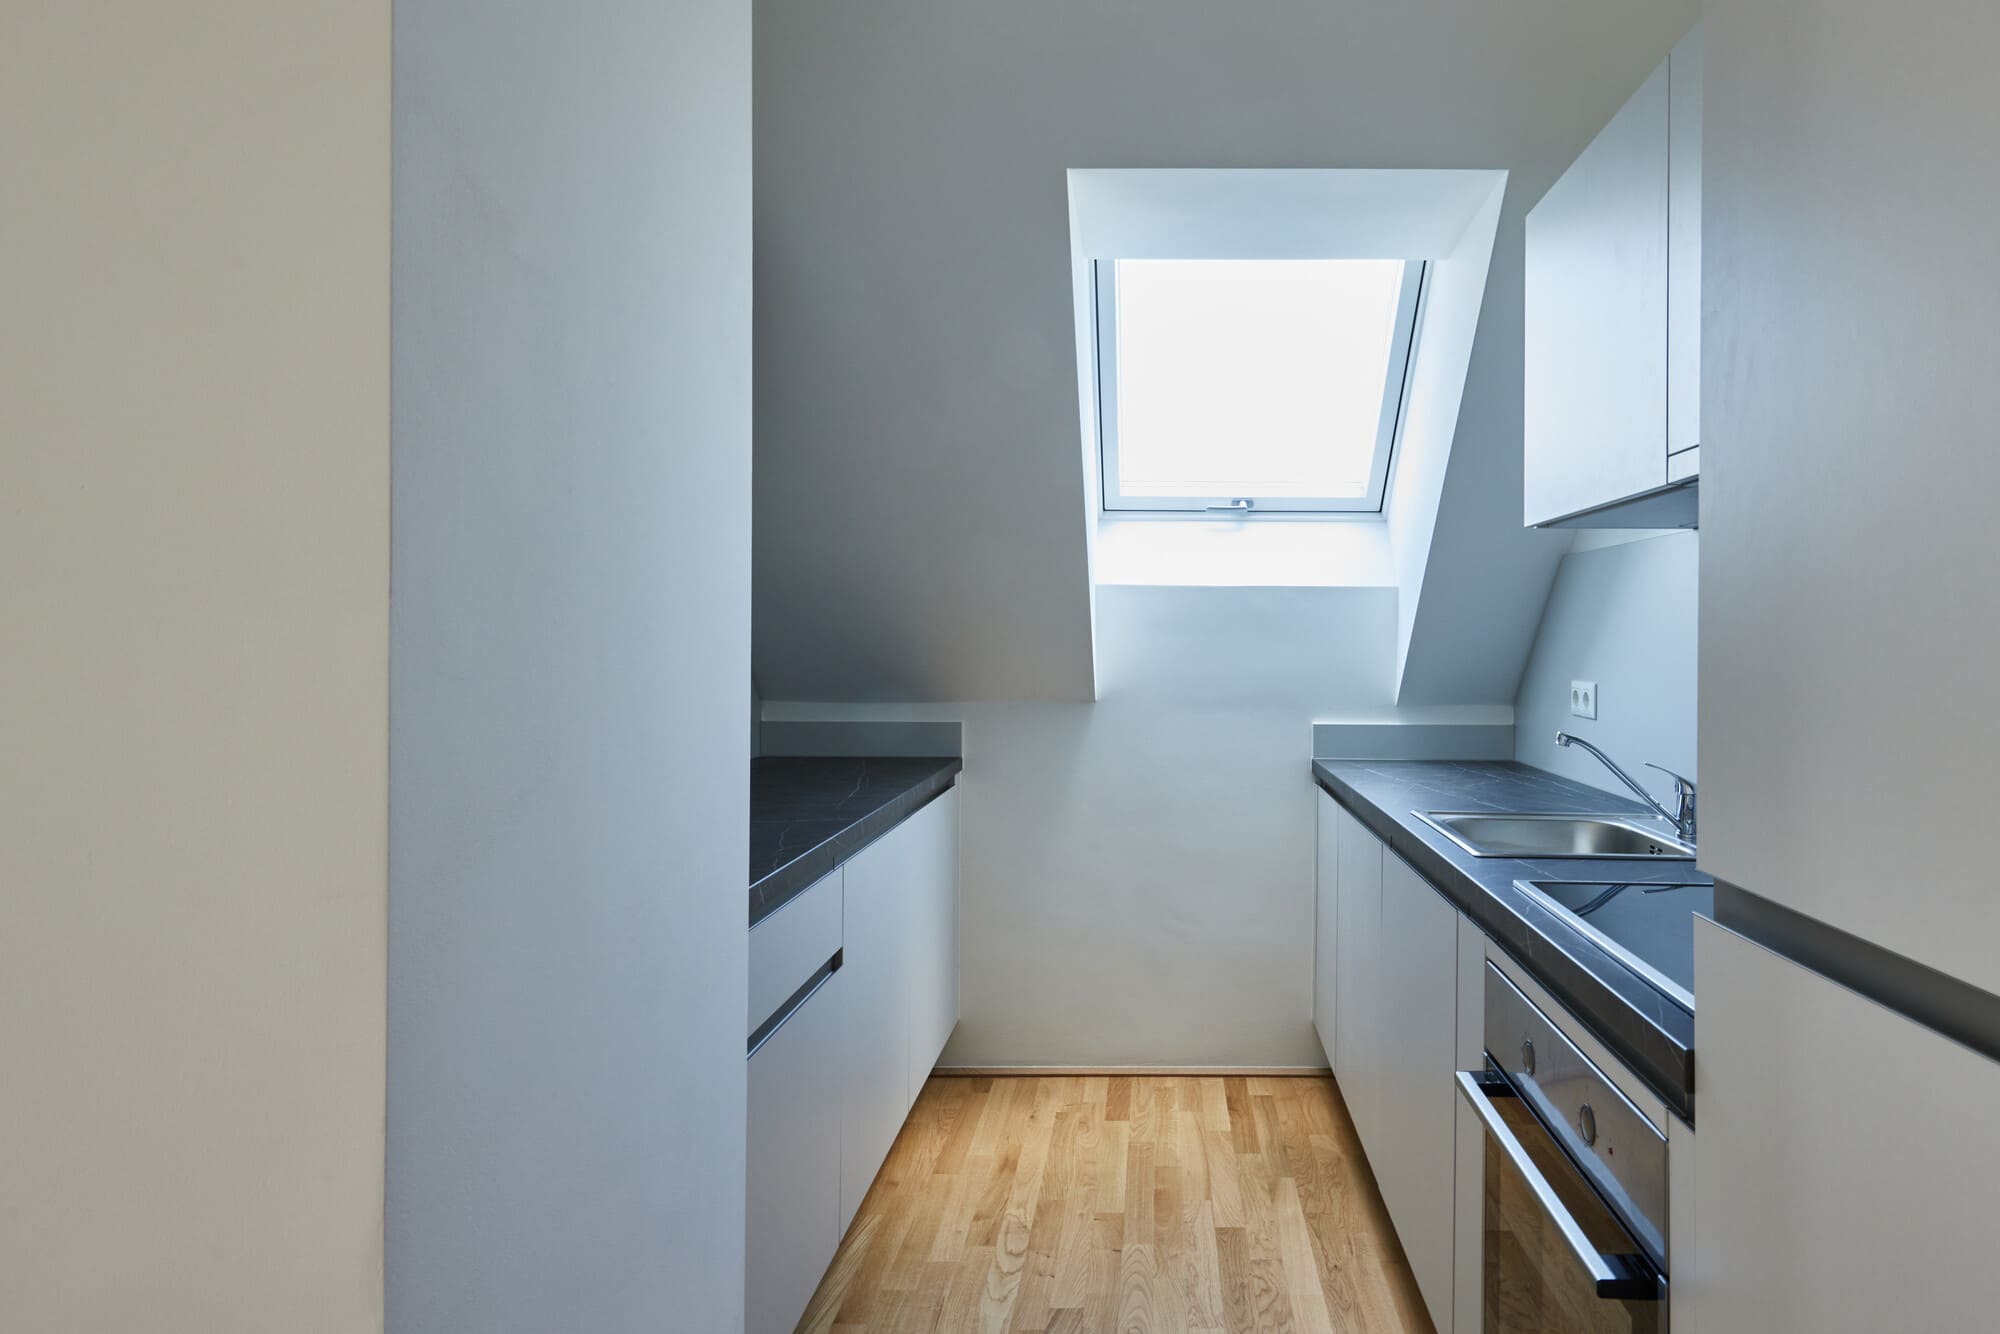 Blick durch die Tür in eine Küche, welche sich in einer Dachschräge mit Fenster befindet.